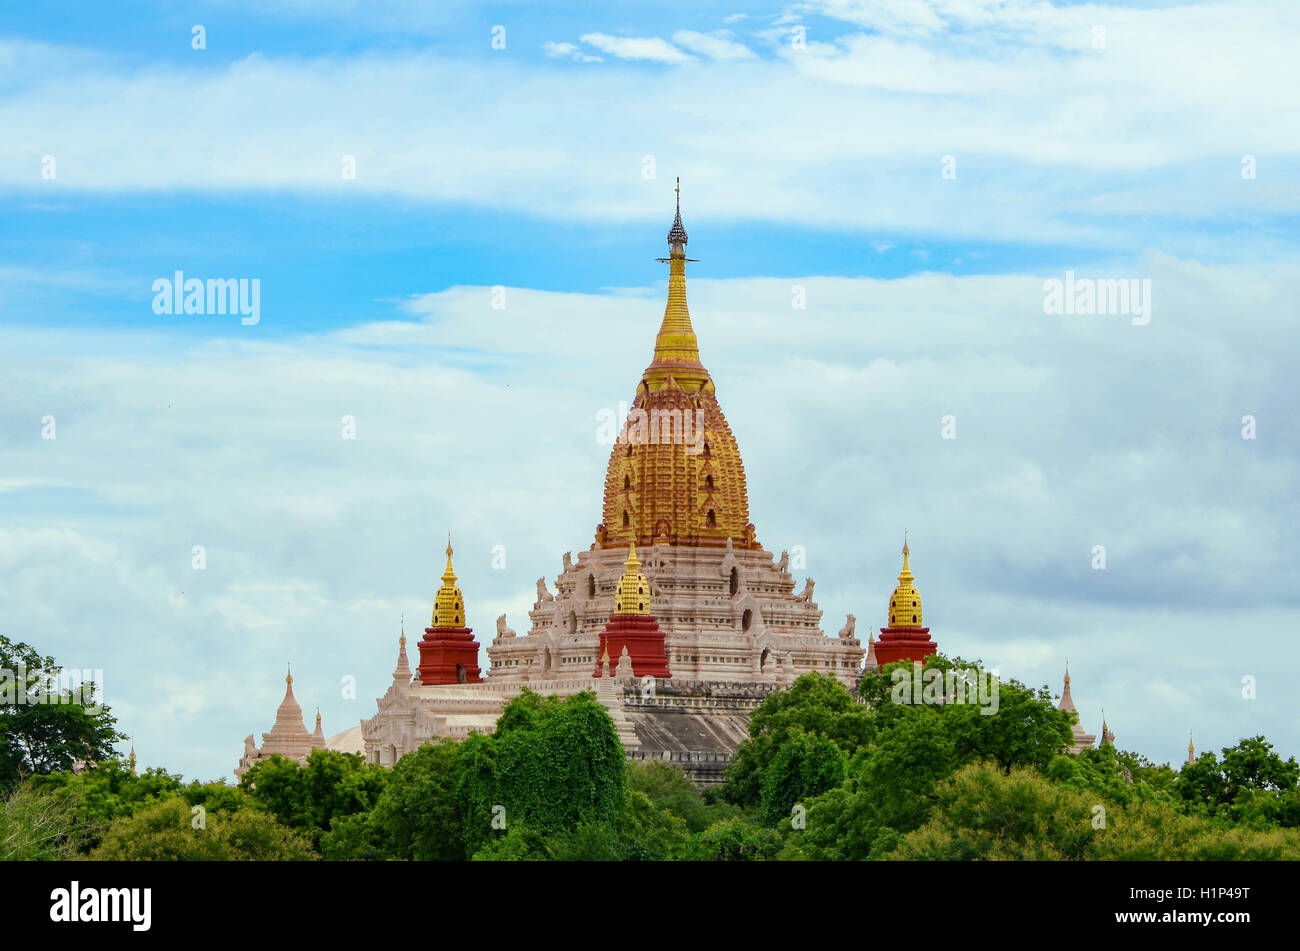 Il Tempio di Ananda, situato a Bagan, Myanmar. È un tempio buddista costruito nel 1105 d.c. durante il regno (1084 - 1113) del Re Kyanz Foto Stock